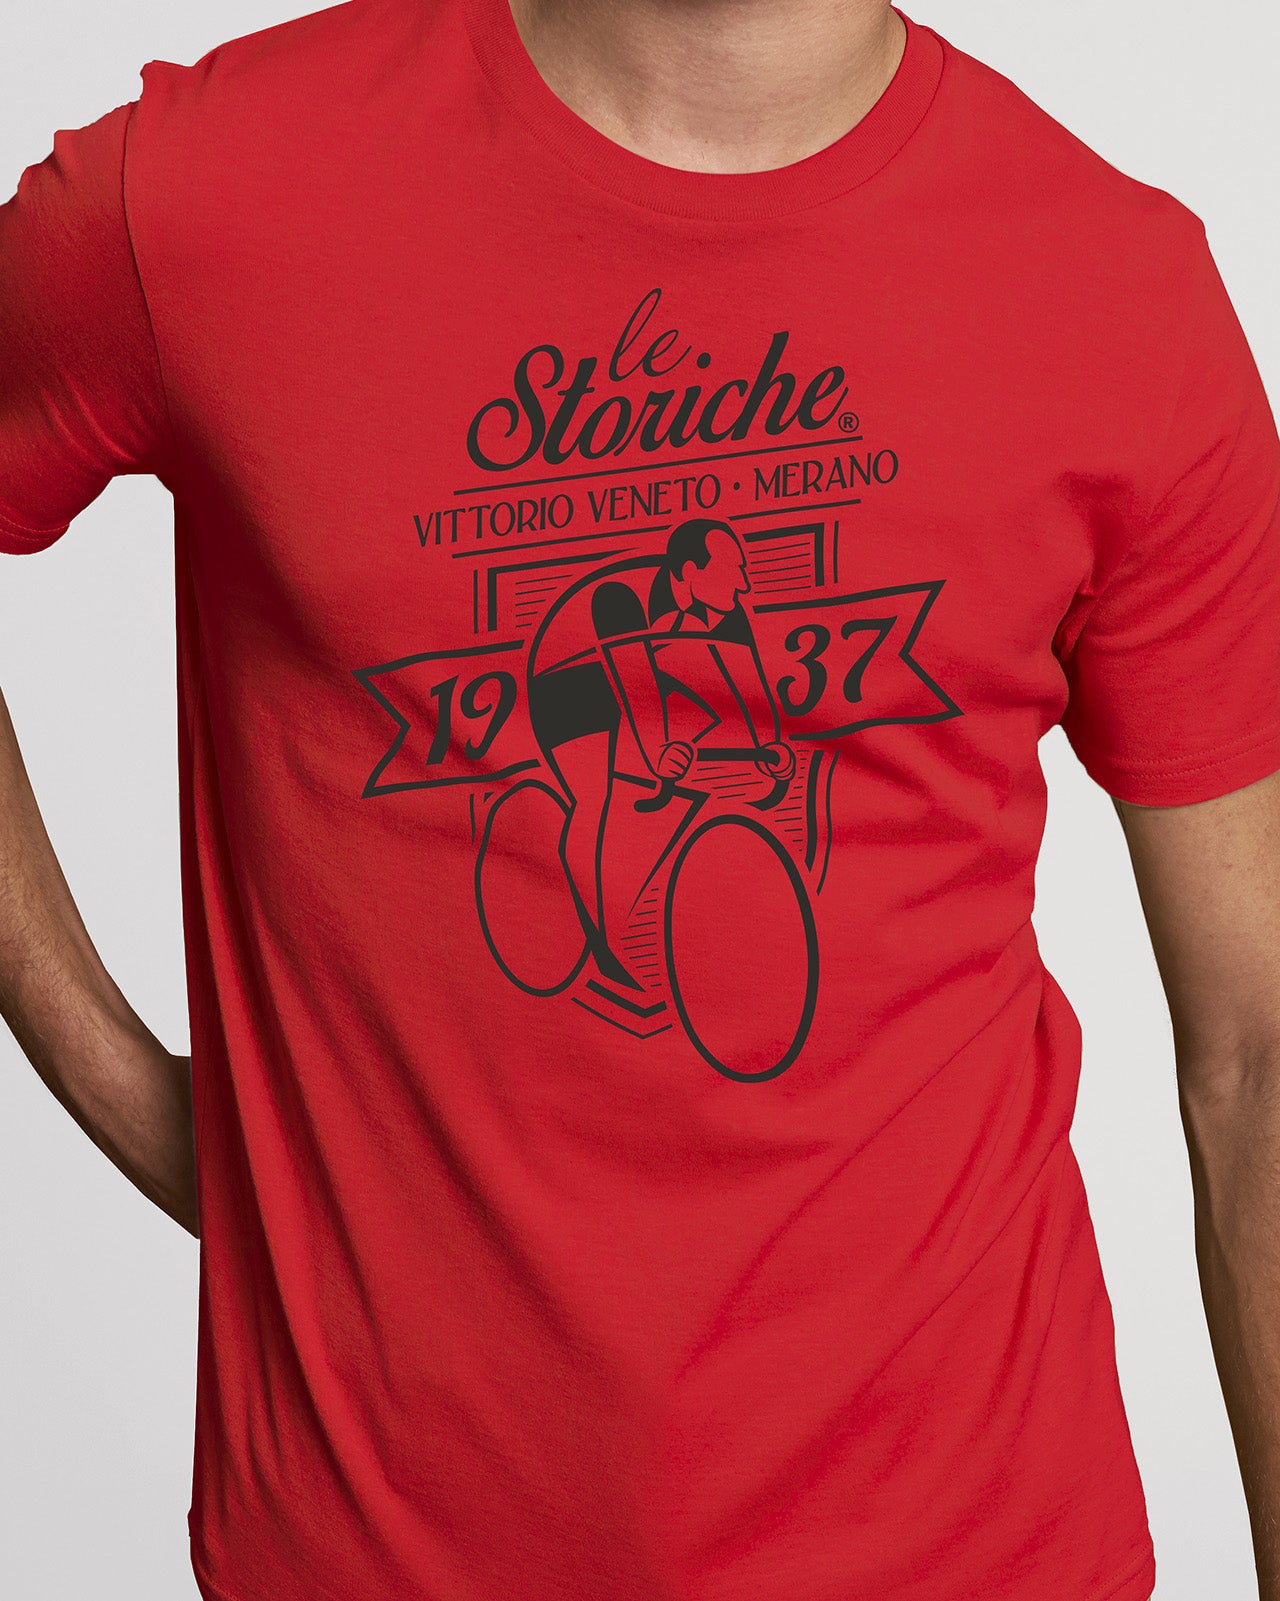 t-shirt "le Storiche" mod. 1937